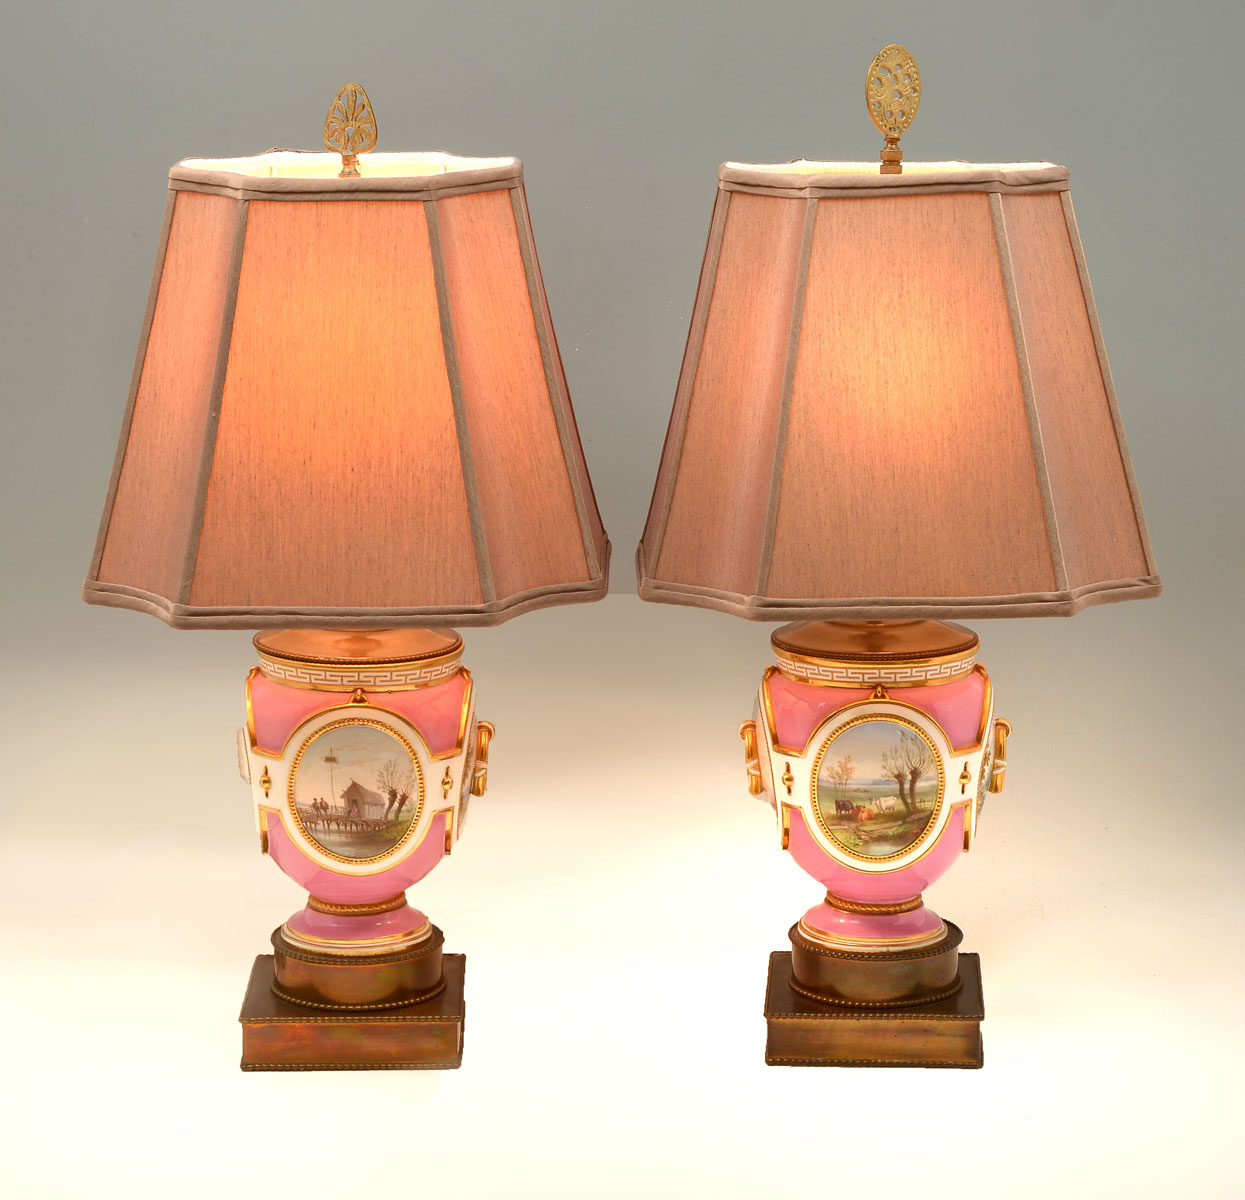 PR OLD PARIS PARLOR LAMPS Pink 36e0a0